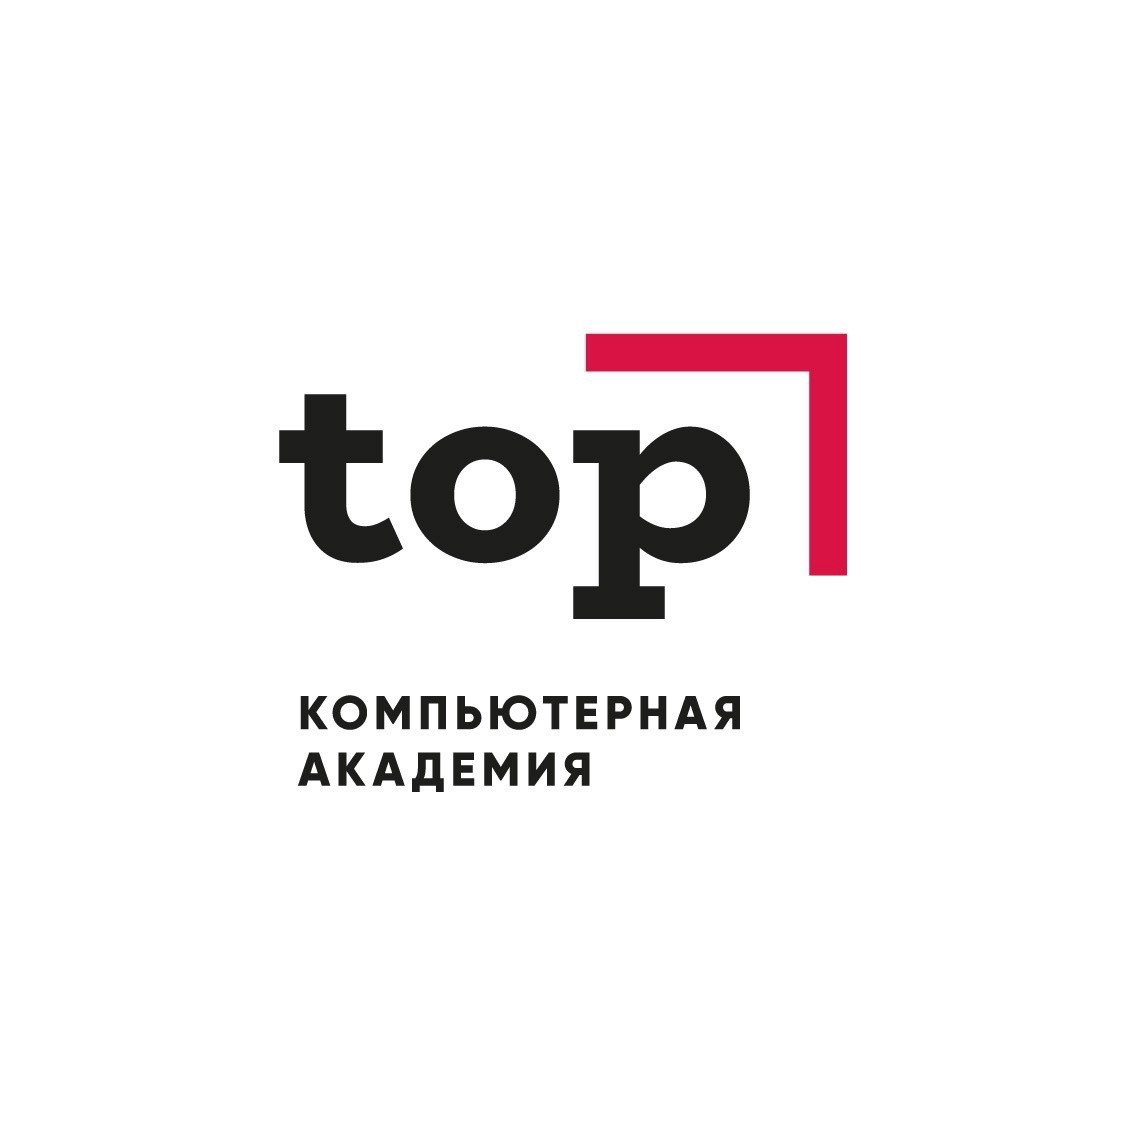 Компьютерная академия TOP на Ленинградском проспекте